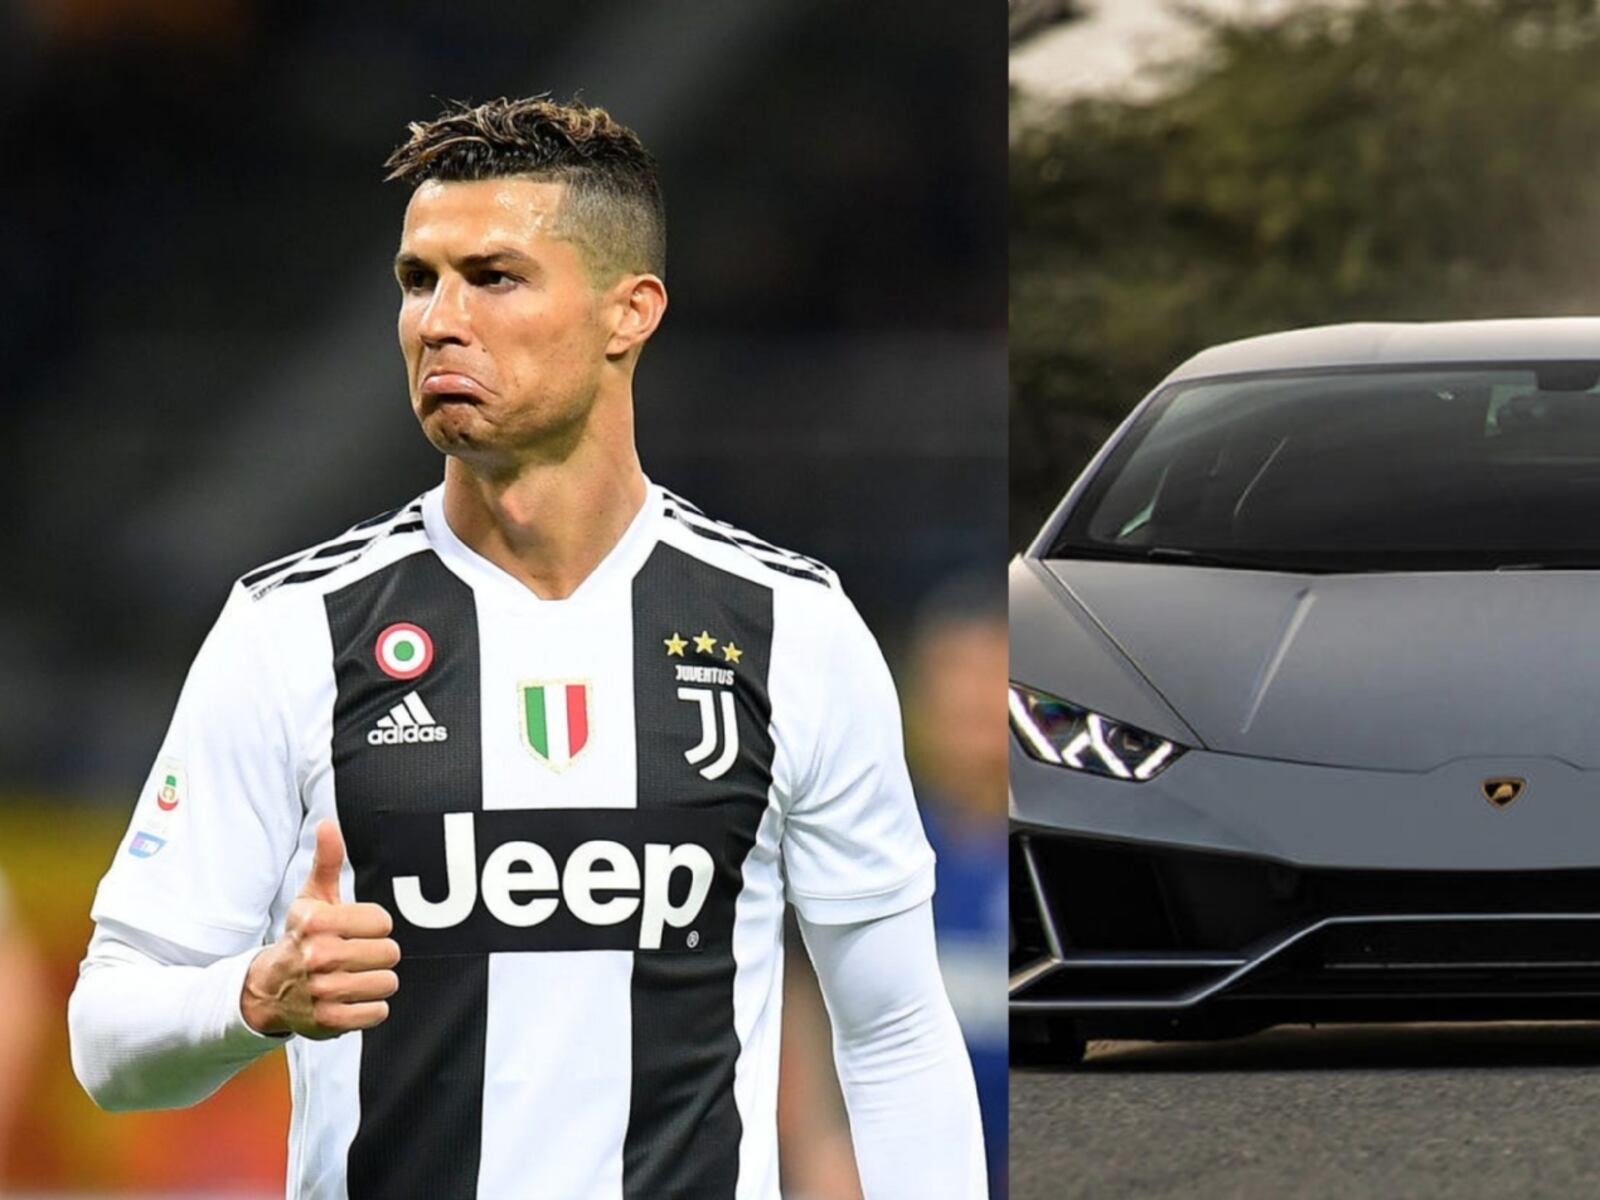 El mexicano que no tuvo que salir del continente para ganar una fortuna y comprarse el mismo coche que Cristiano Ronaldo